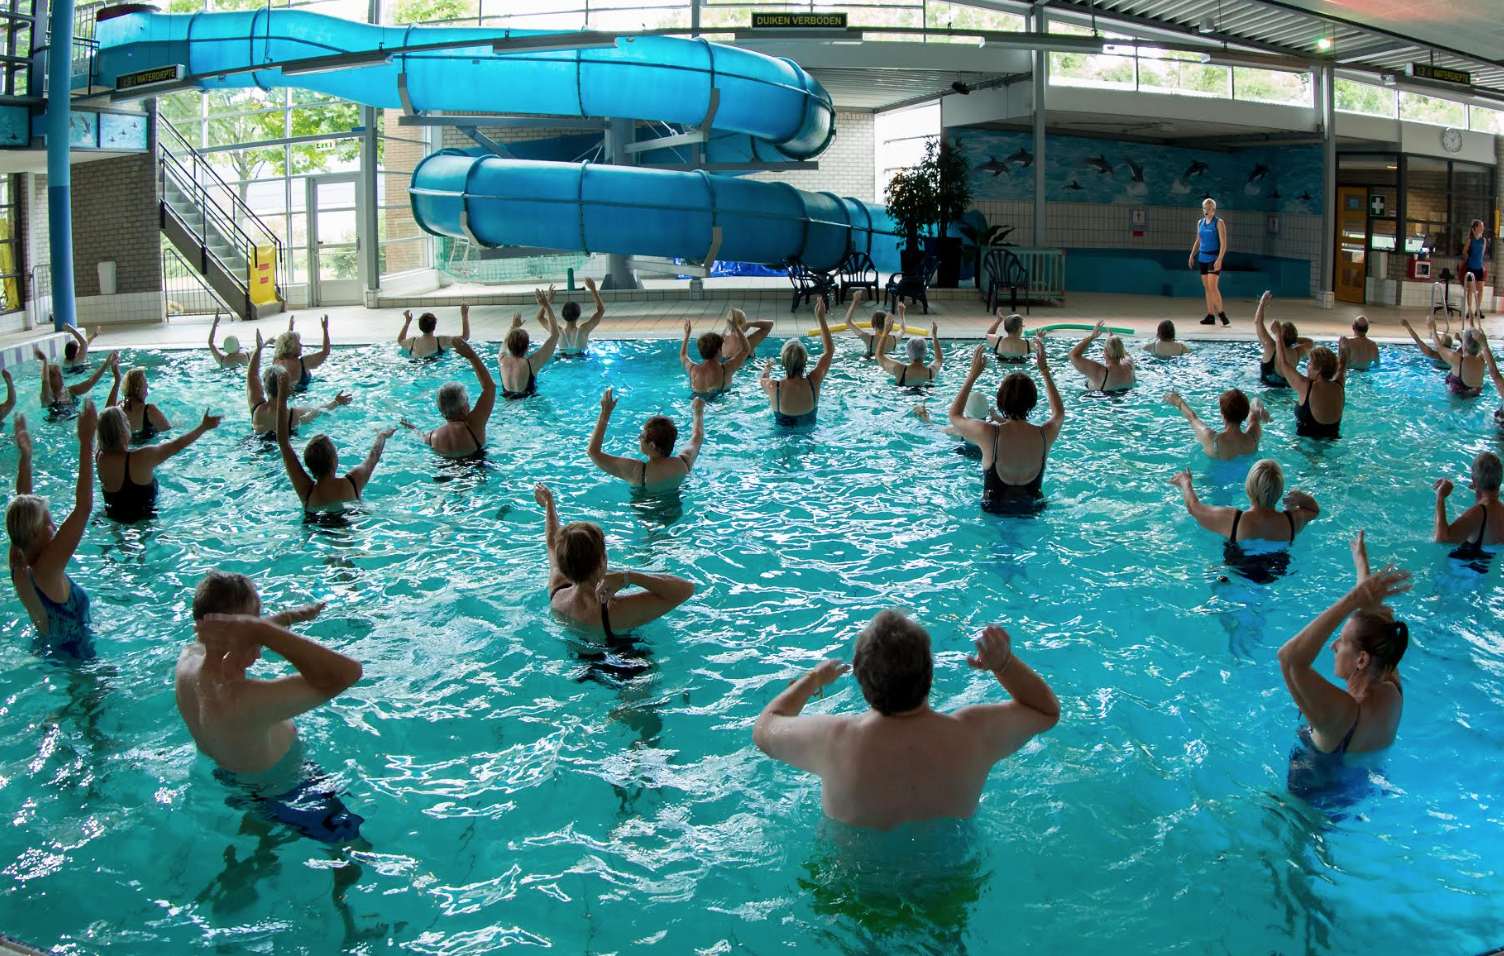 ‘Fifty fitters’ socialisen in het zwembad